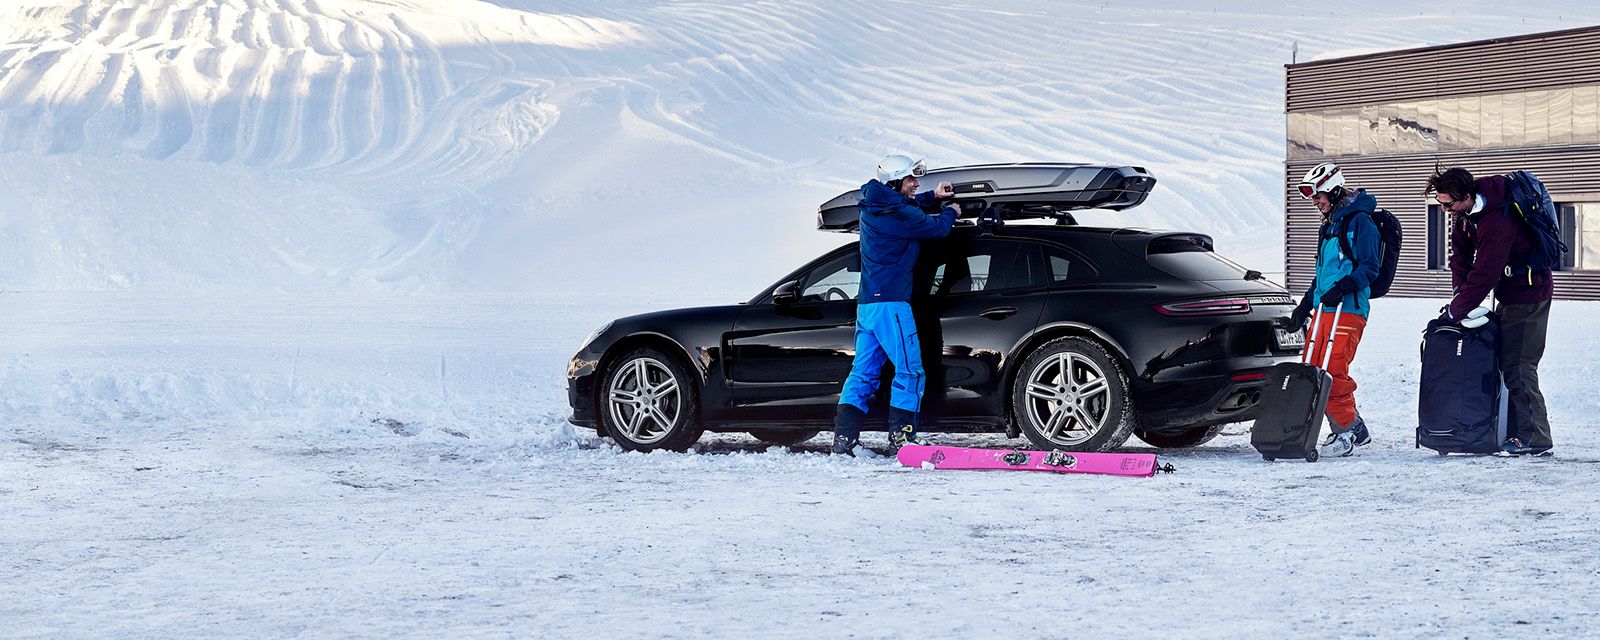 Twee mensen met ski-uitrusting in de sneeuw laten hun spullen in een auto en een dakkoffer.